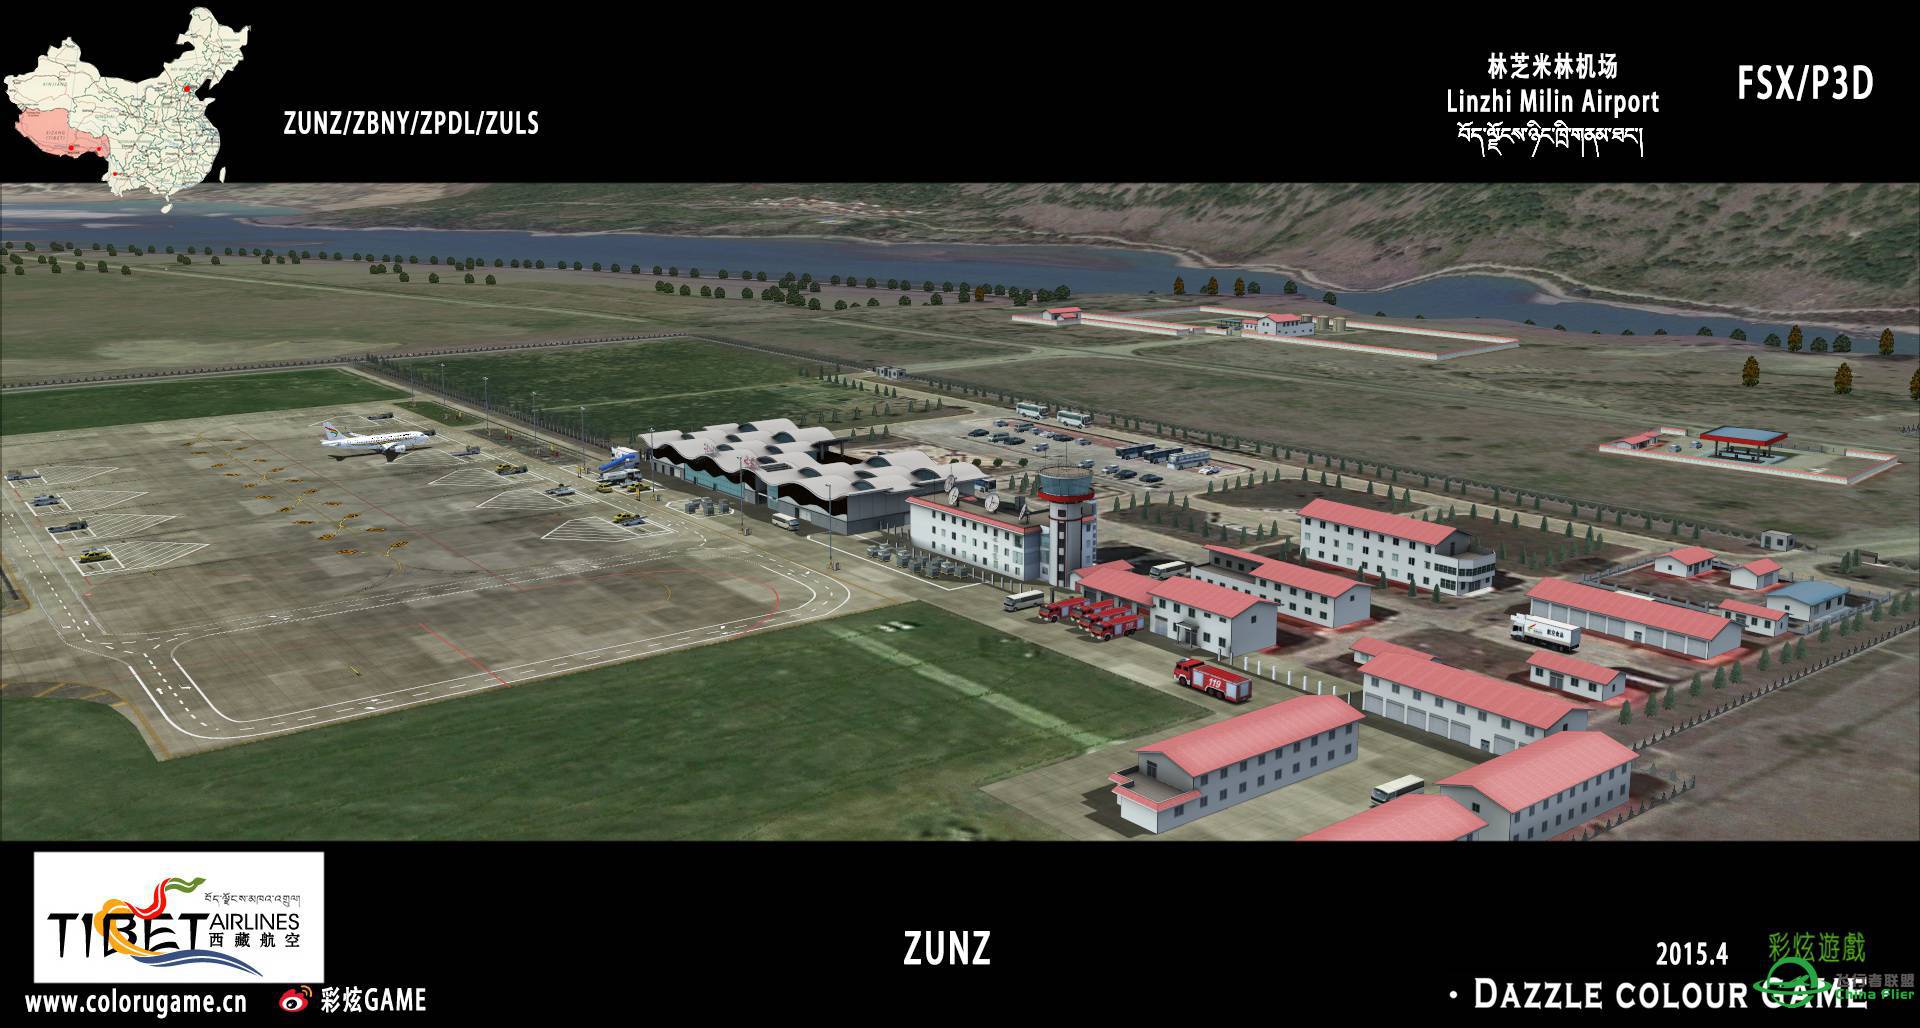 彩炫地景：林芝米林机场（ZUNZ）正式发布！-4634 